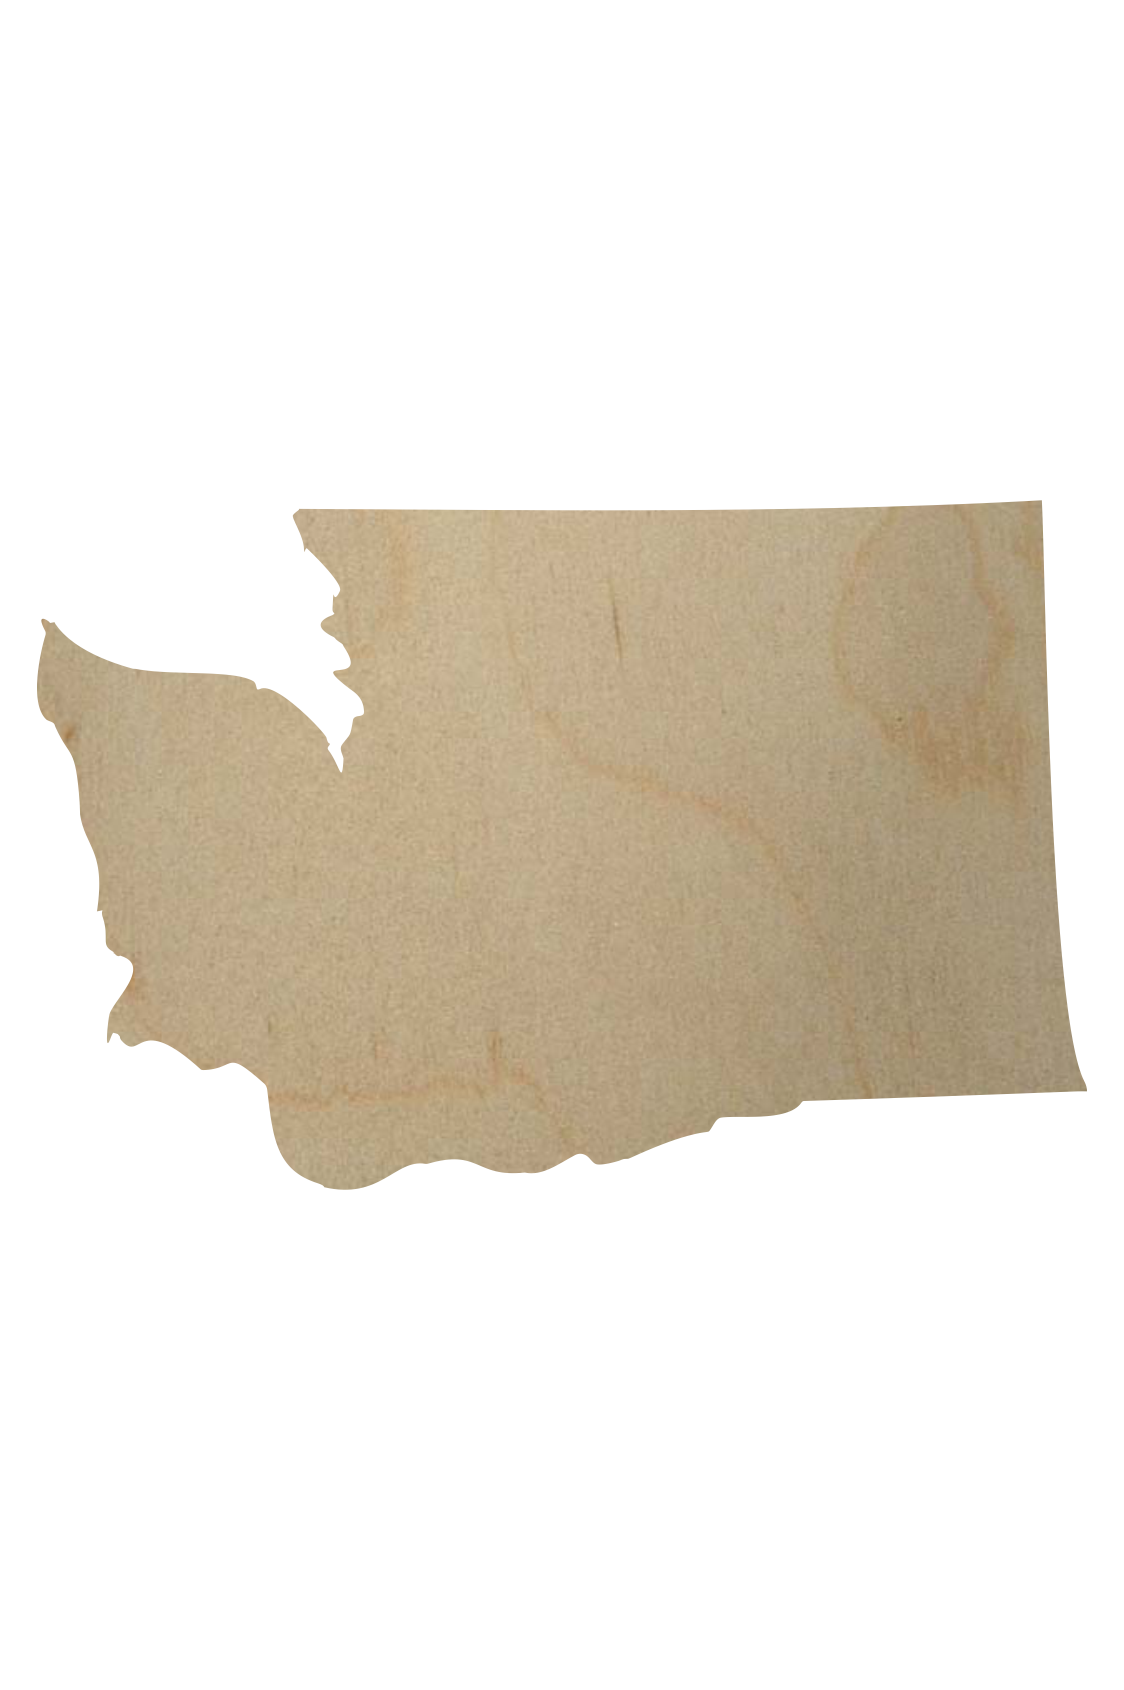 Large /& Small Washington WA Crafty Borders State Cutout *1-24 Pick Siz...